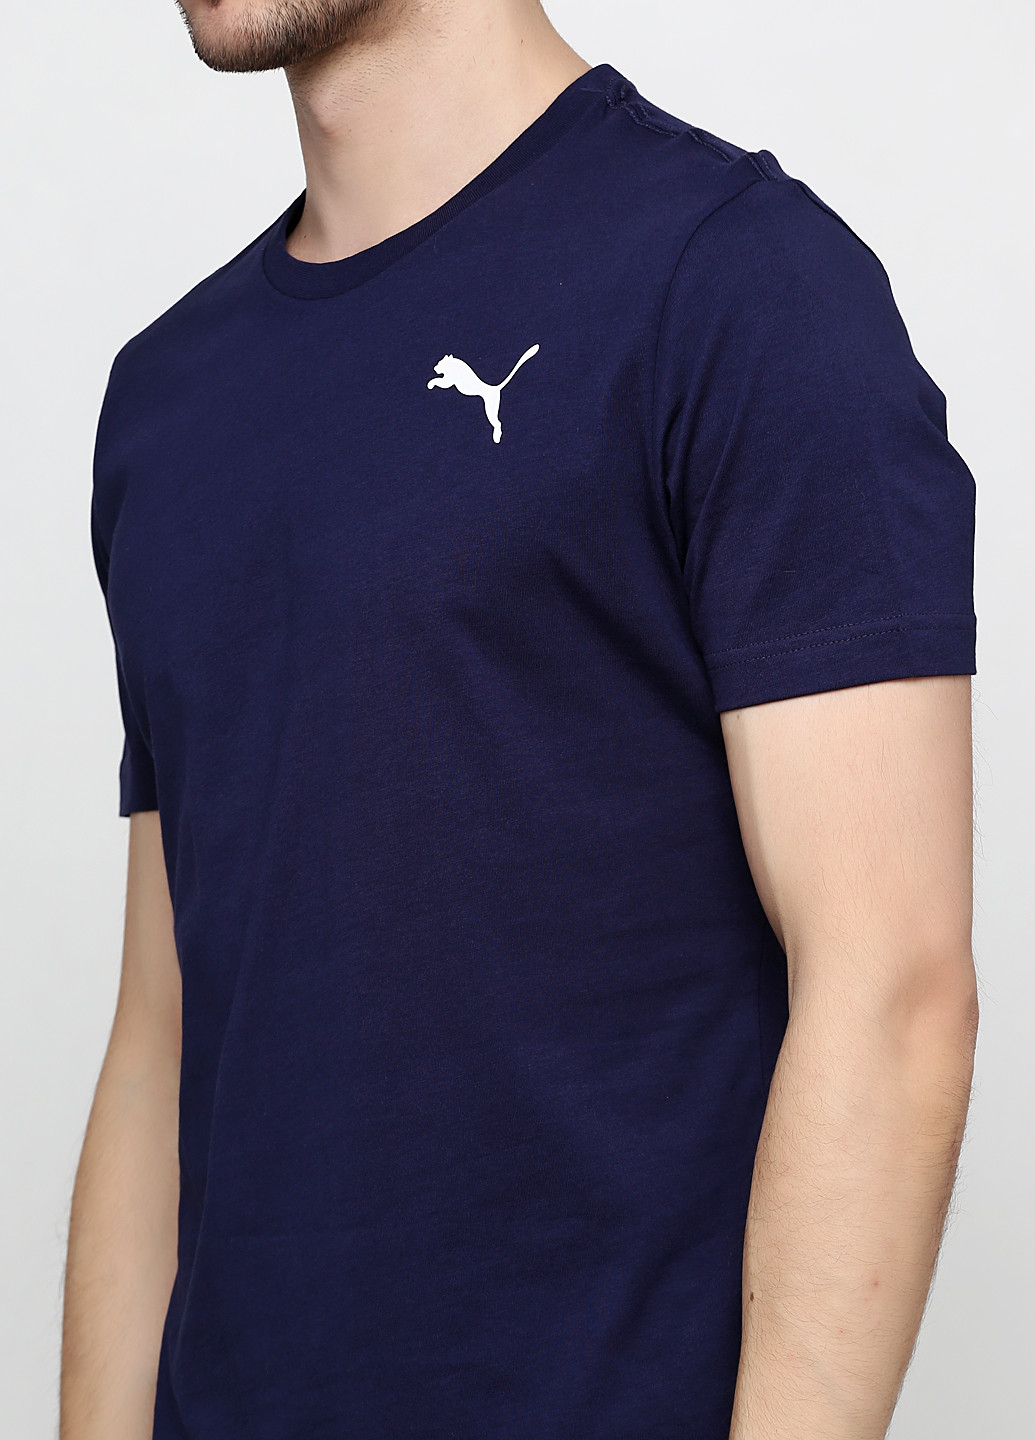 Синяя футболка Puma